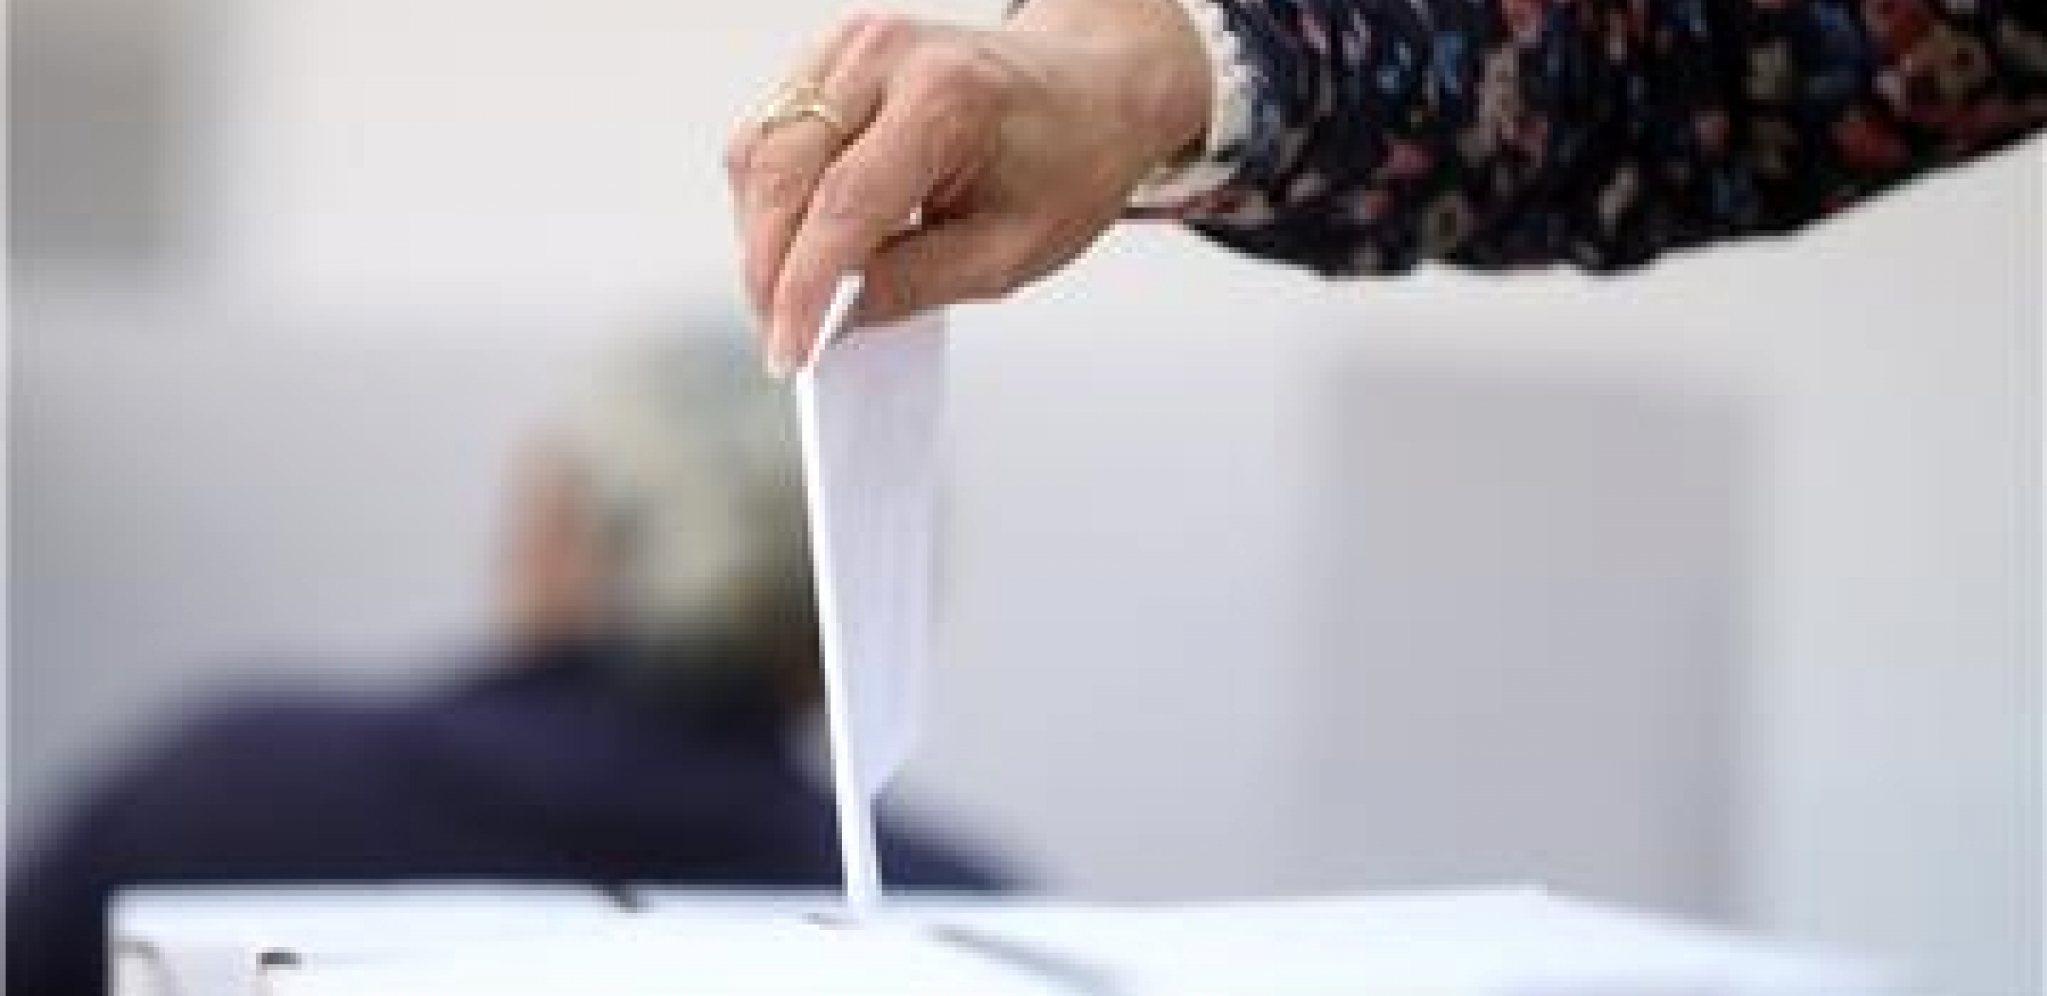 PRIPREME U JEKU U inostranstvu 10 glasačkih mesta za referendum